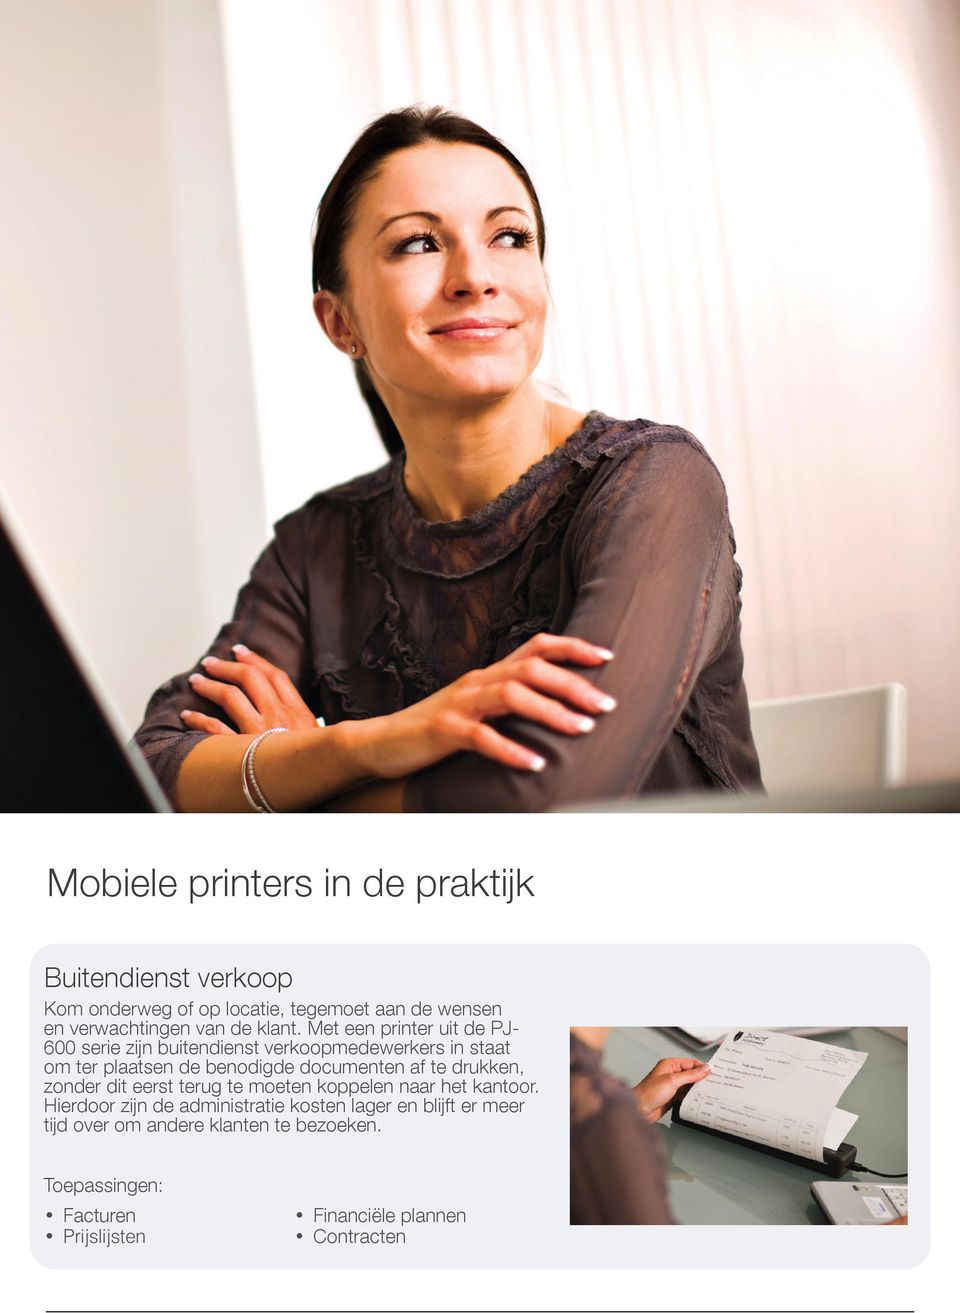 Met een printer uit de PJ- 600 serie zijn buitendienst verkoopmedewerkers in staat om ter plaatsen de benodigde documenten af